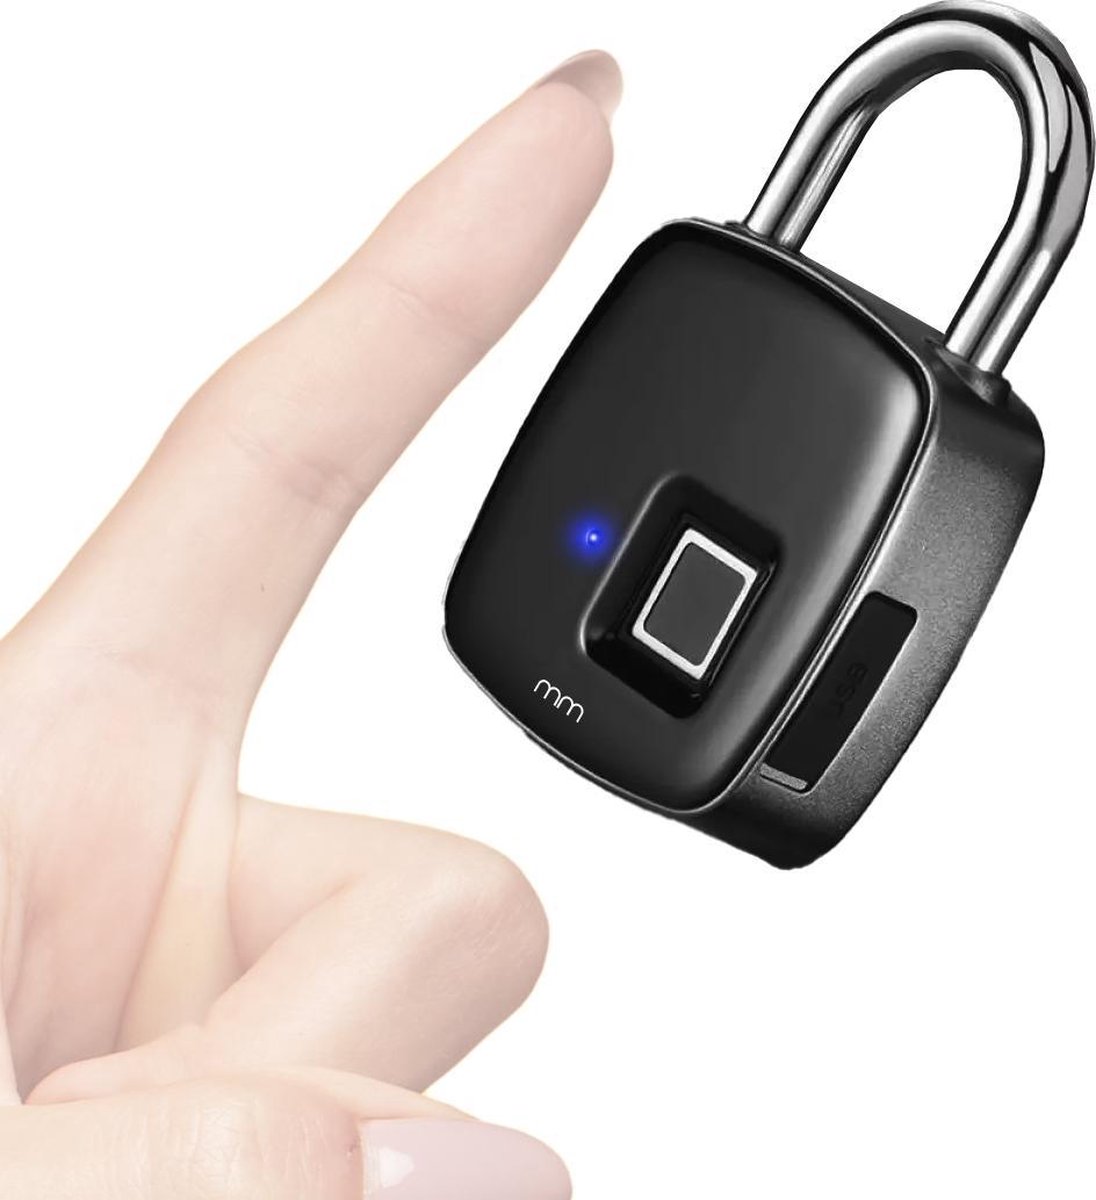 MikaMax Fingerprint Lock - Vingerafdruk Slot - Elektrisch Slot